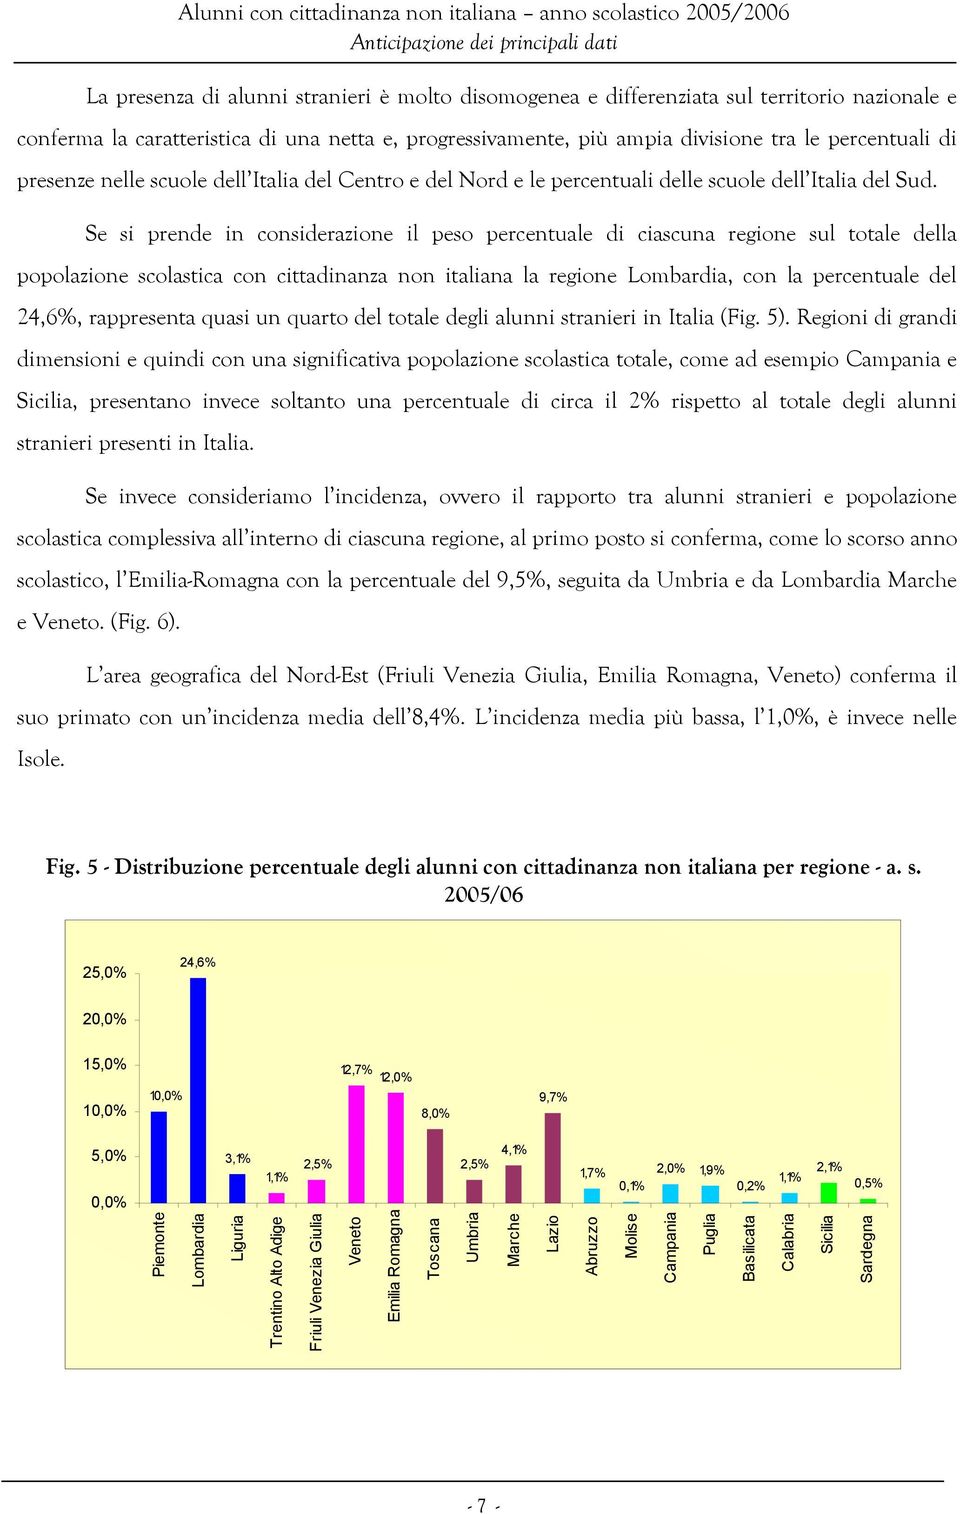 Se si prende in considerazione il peso percentuale di ciascuna regione sul totale della popolazione scolastica con cittadinanza non italiana la regione Lombardia, con la percentuale del 24,6%,